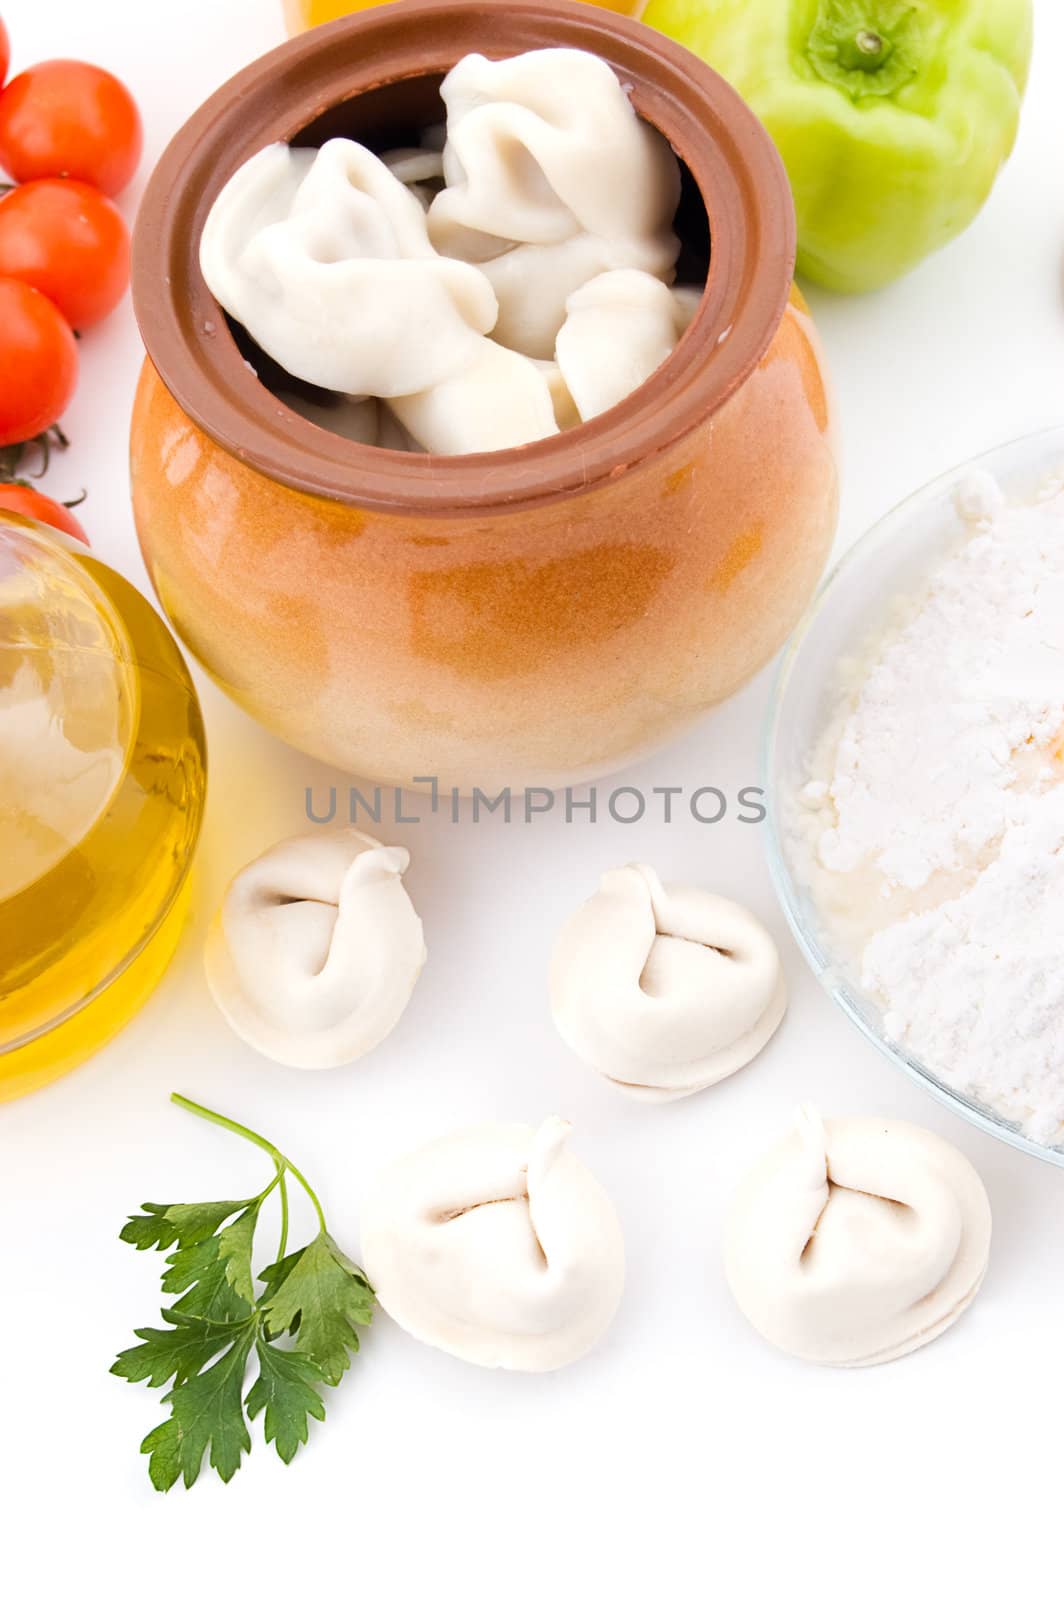 Meat dumplings in pot by Angel_a